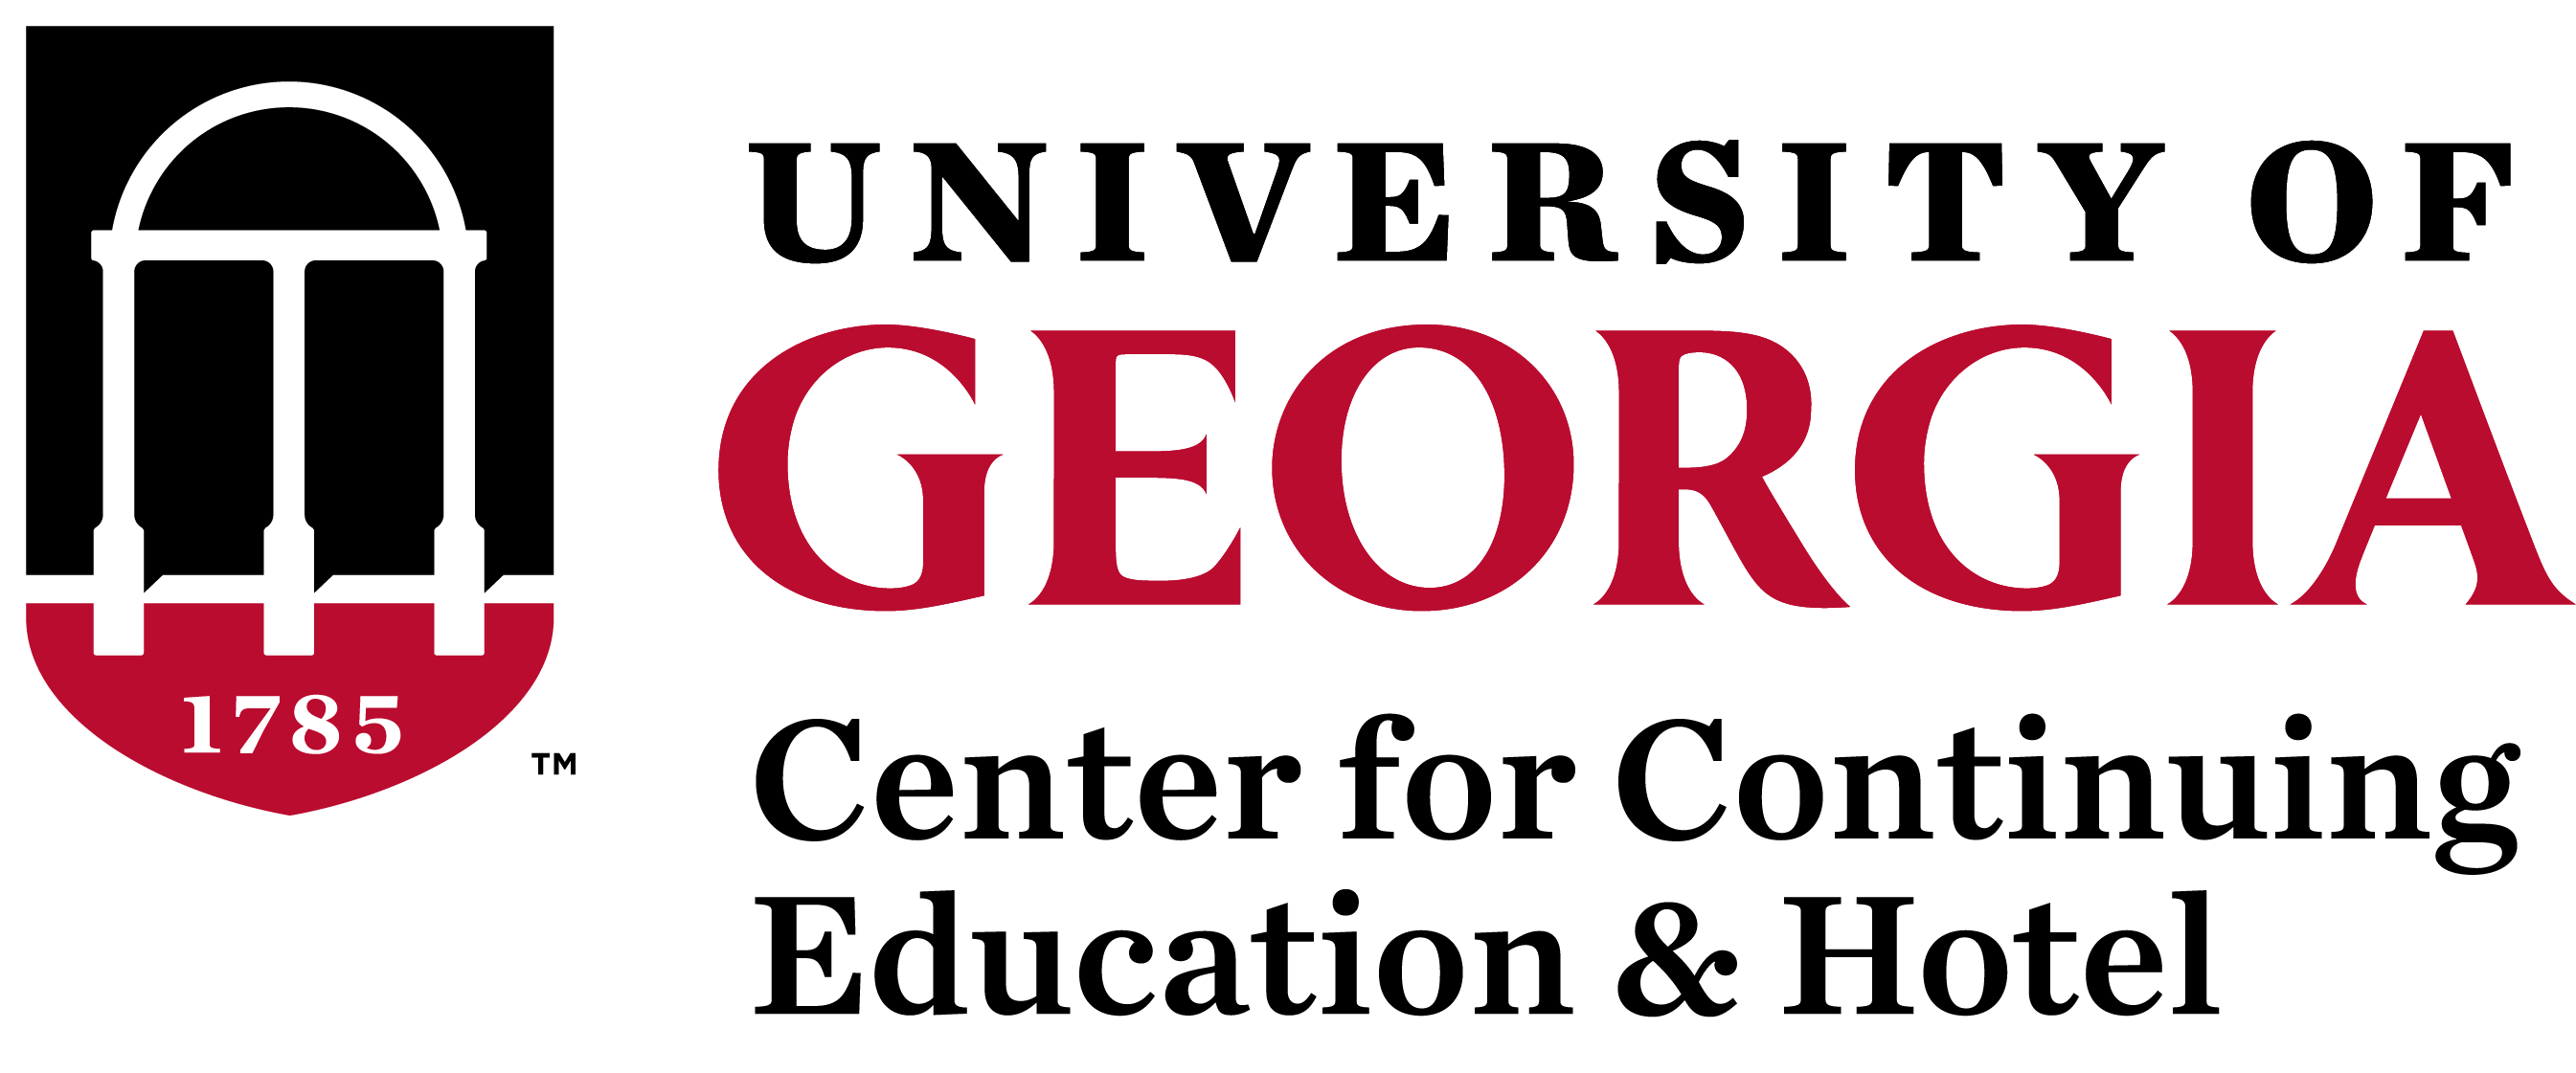 Logo for The University of Georgia Center for Continuing Education & Hotel Full Stack Software Developer Certificate Program